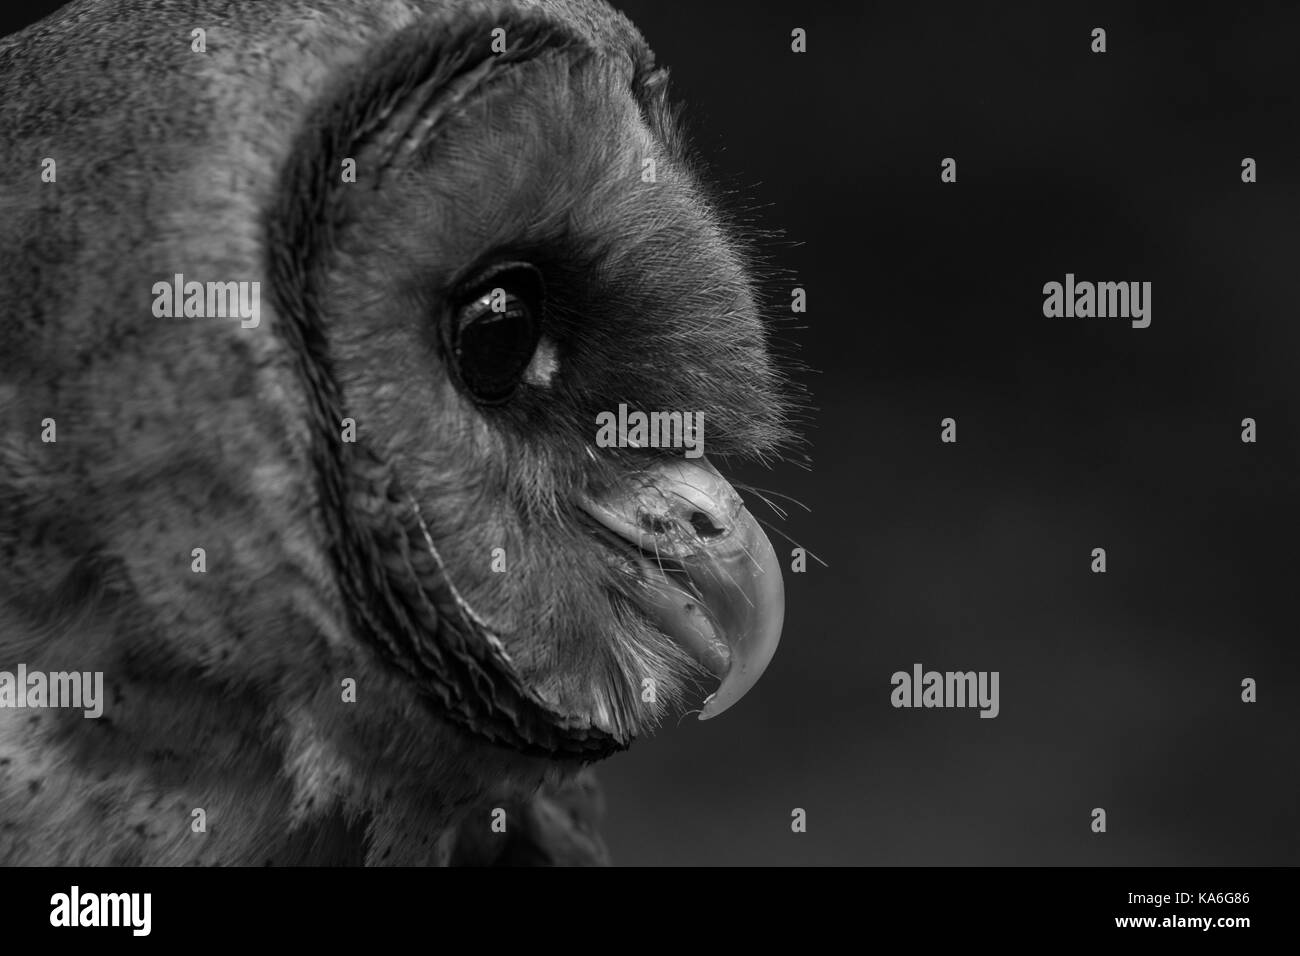 La tête Owl à surface cendrée se rapproche sur fond sombre Banque D'Images